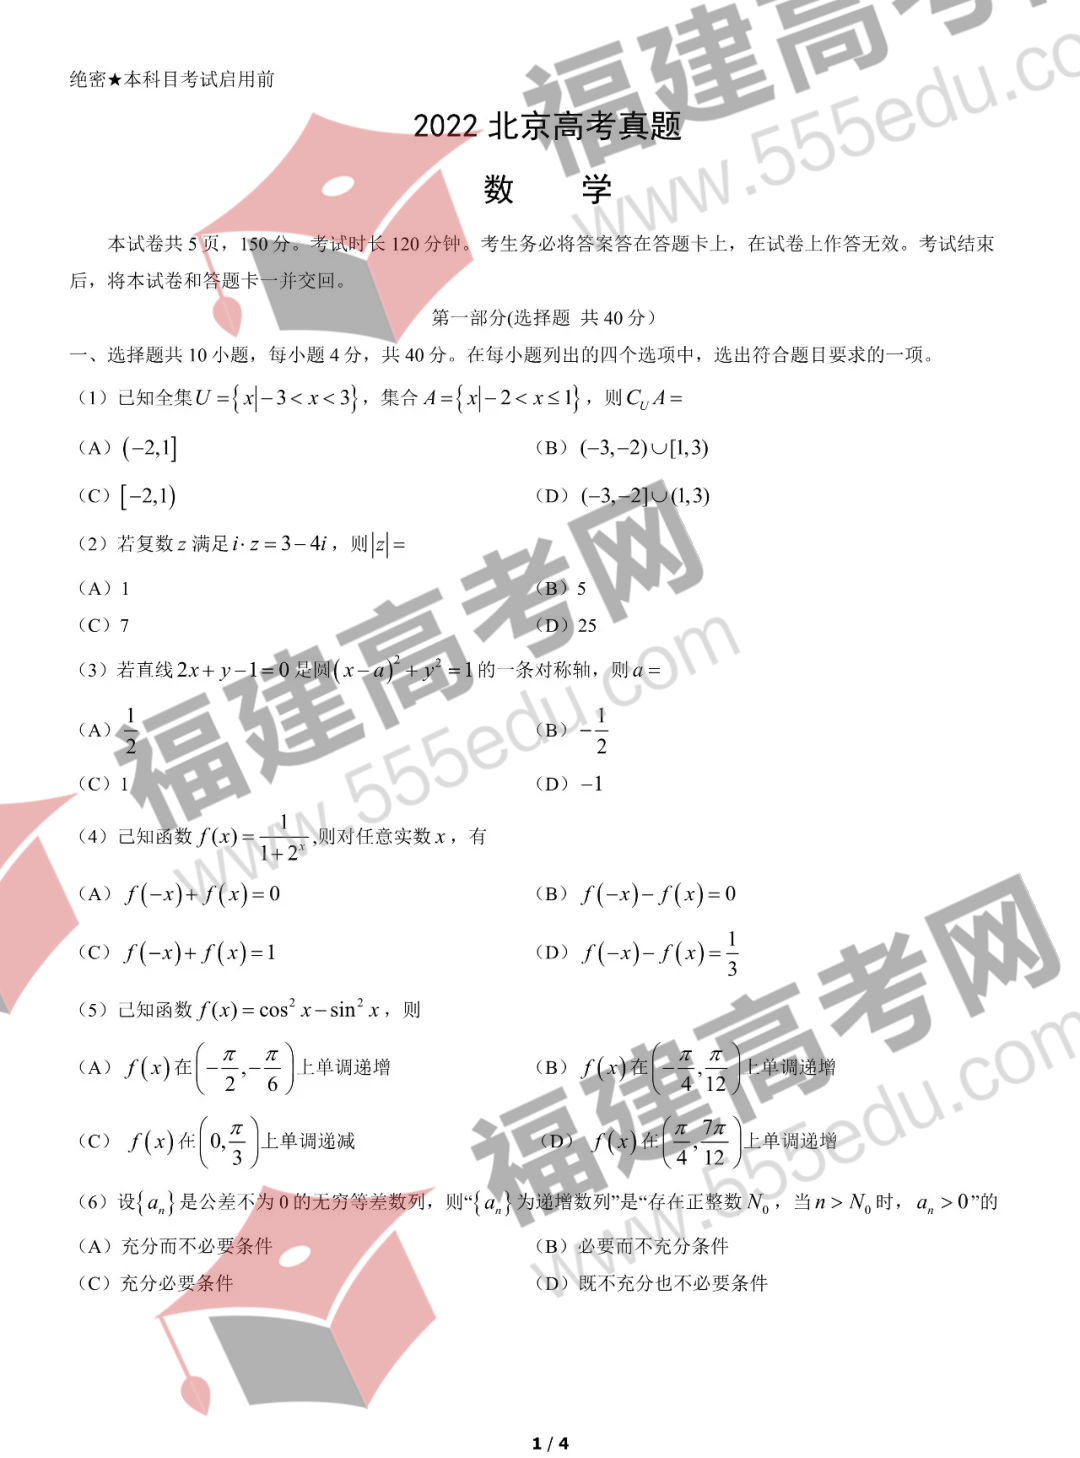 2022年北京高考数学考试真题